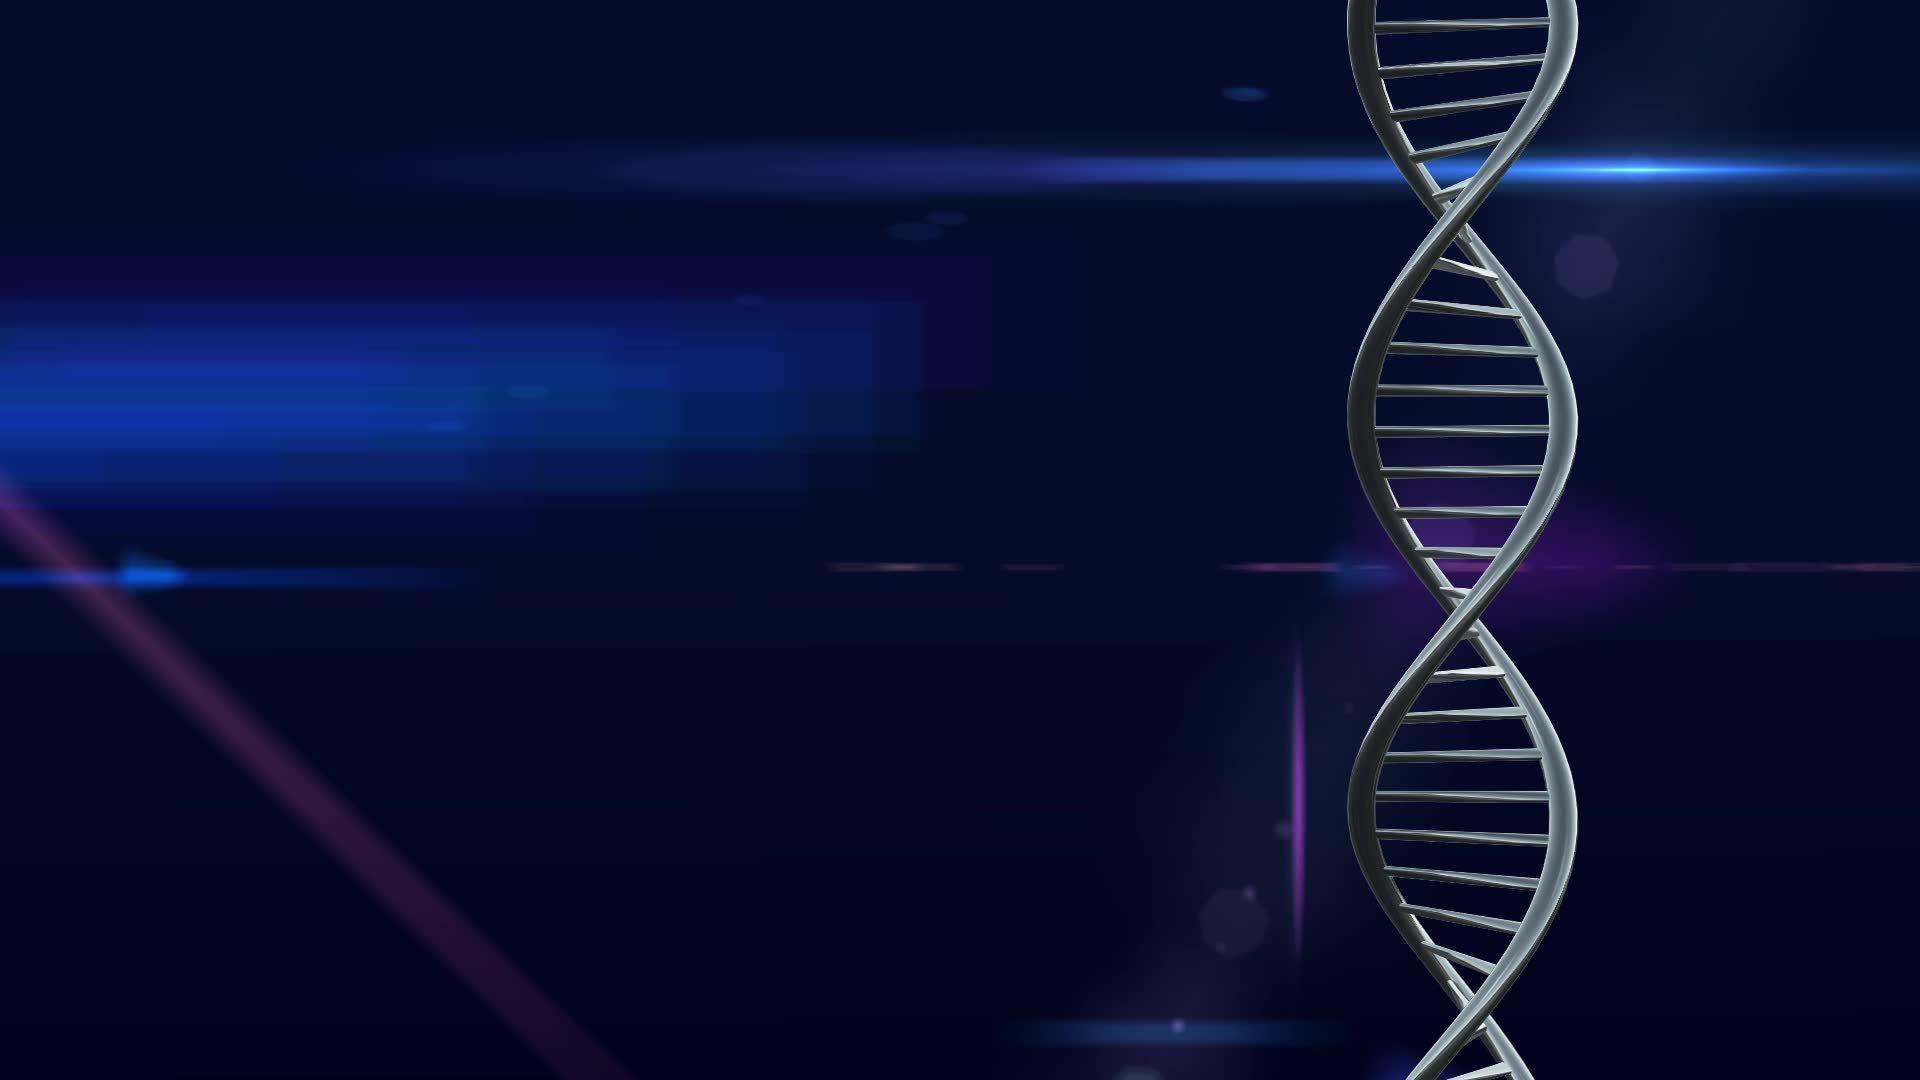 Днк без рекламы ютуб. Генетика фон. ДНК обои. Обои на рабочий стол ДНК. Фон для презентации по биологии.